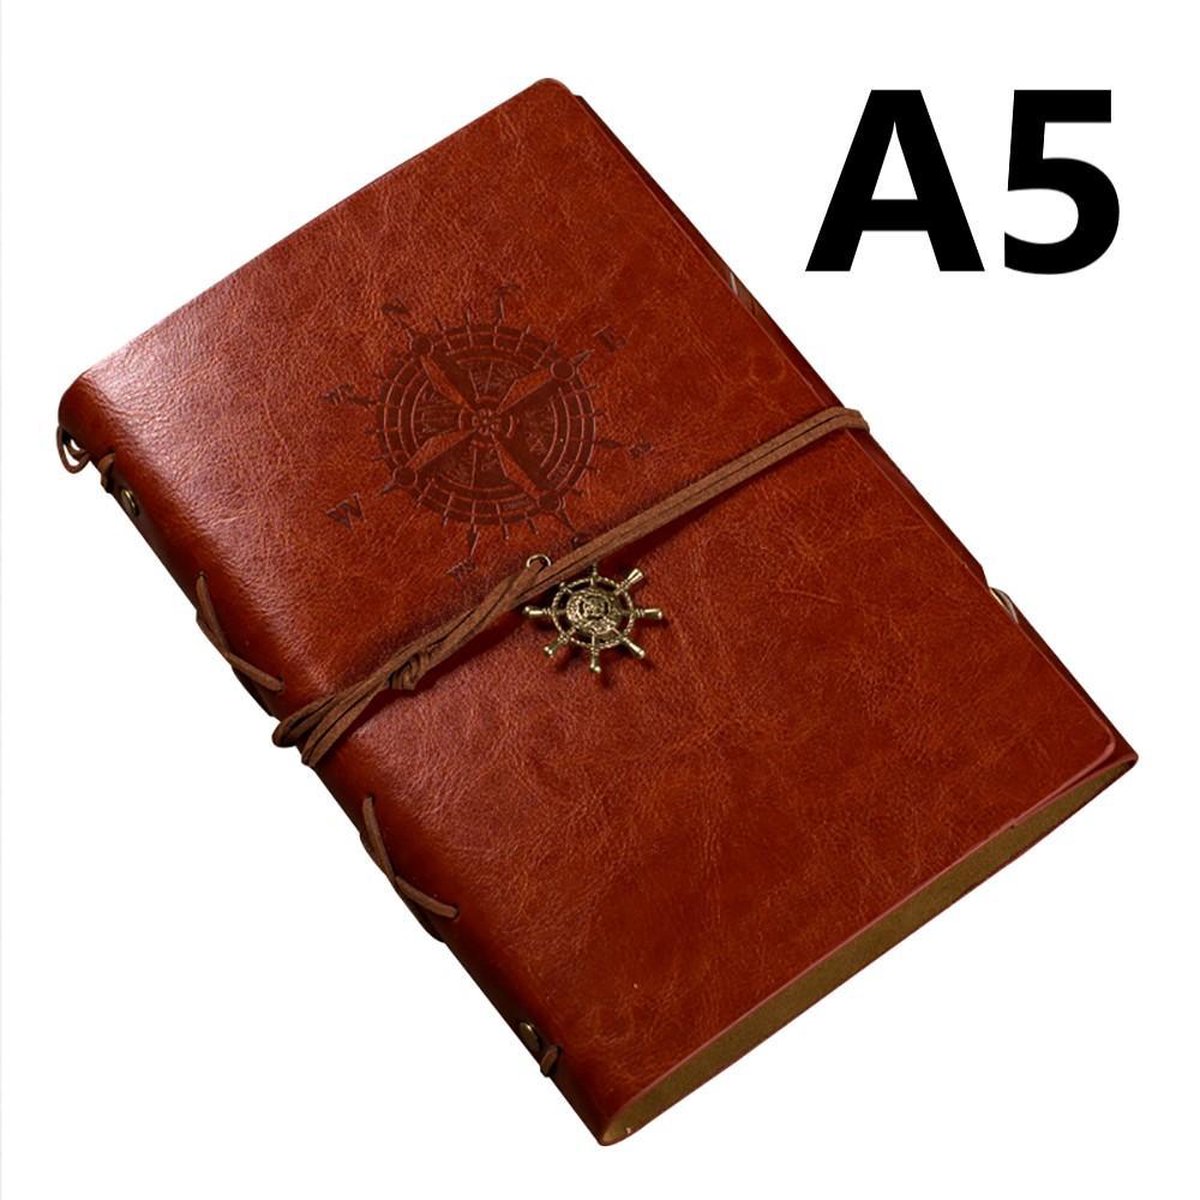 A5 Vintage Lederen Notitieboek met windroos - bruin - Notebook - Cadeau idee